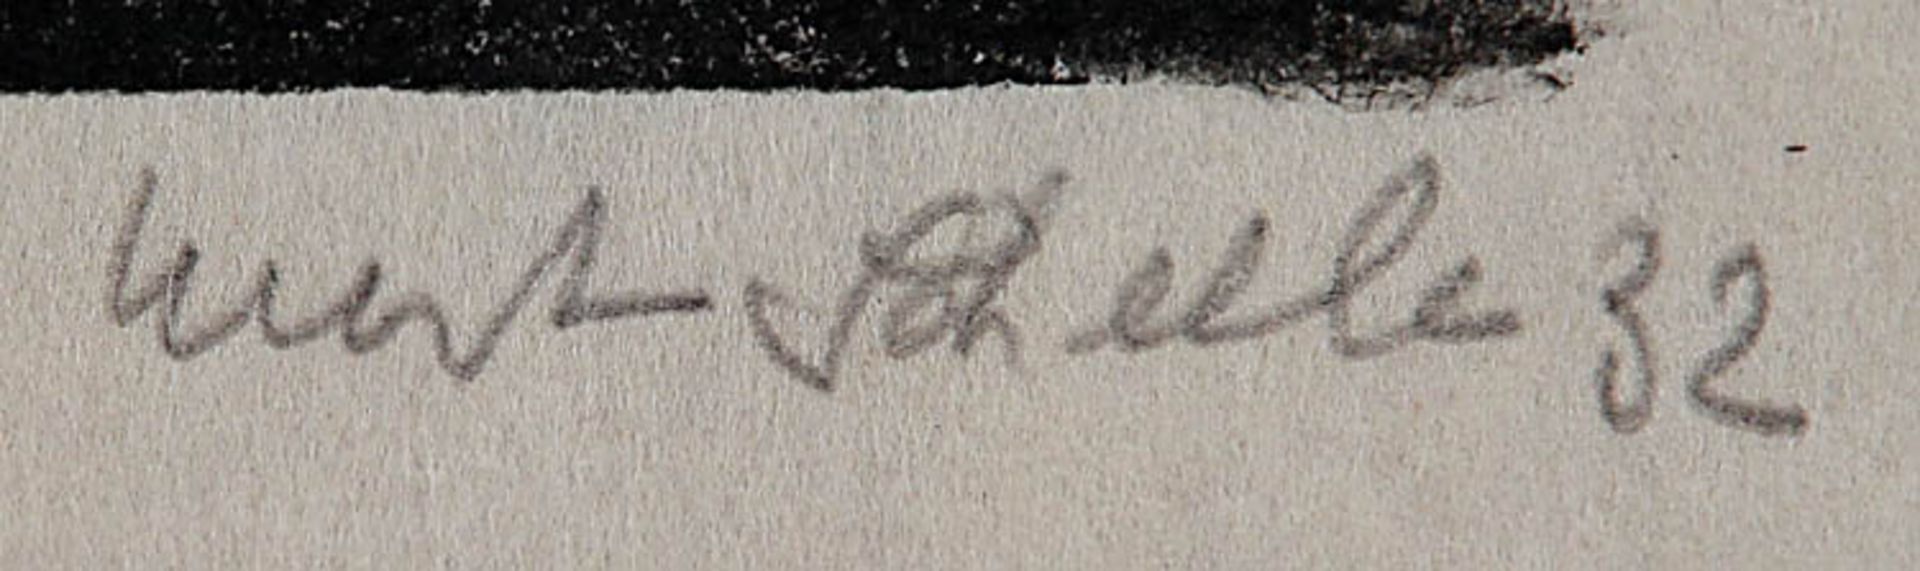 Scheele, KurtKunstausstellung.Holzschnitt, Handdruck, re. u. handsign. Kurt Scheele, dat. (19)32, - Bild 2 aus 2